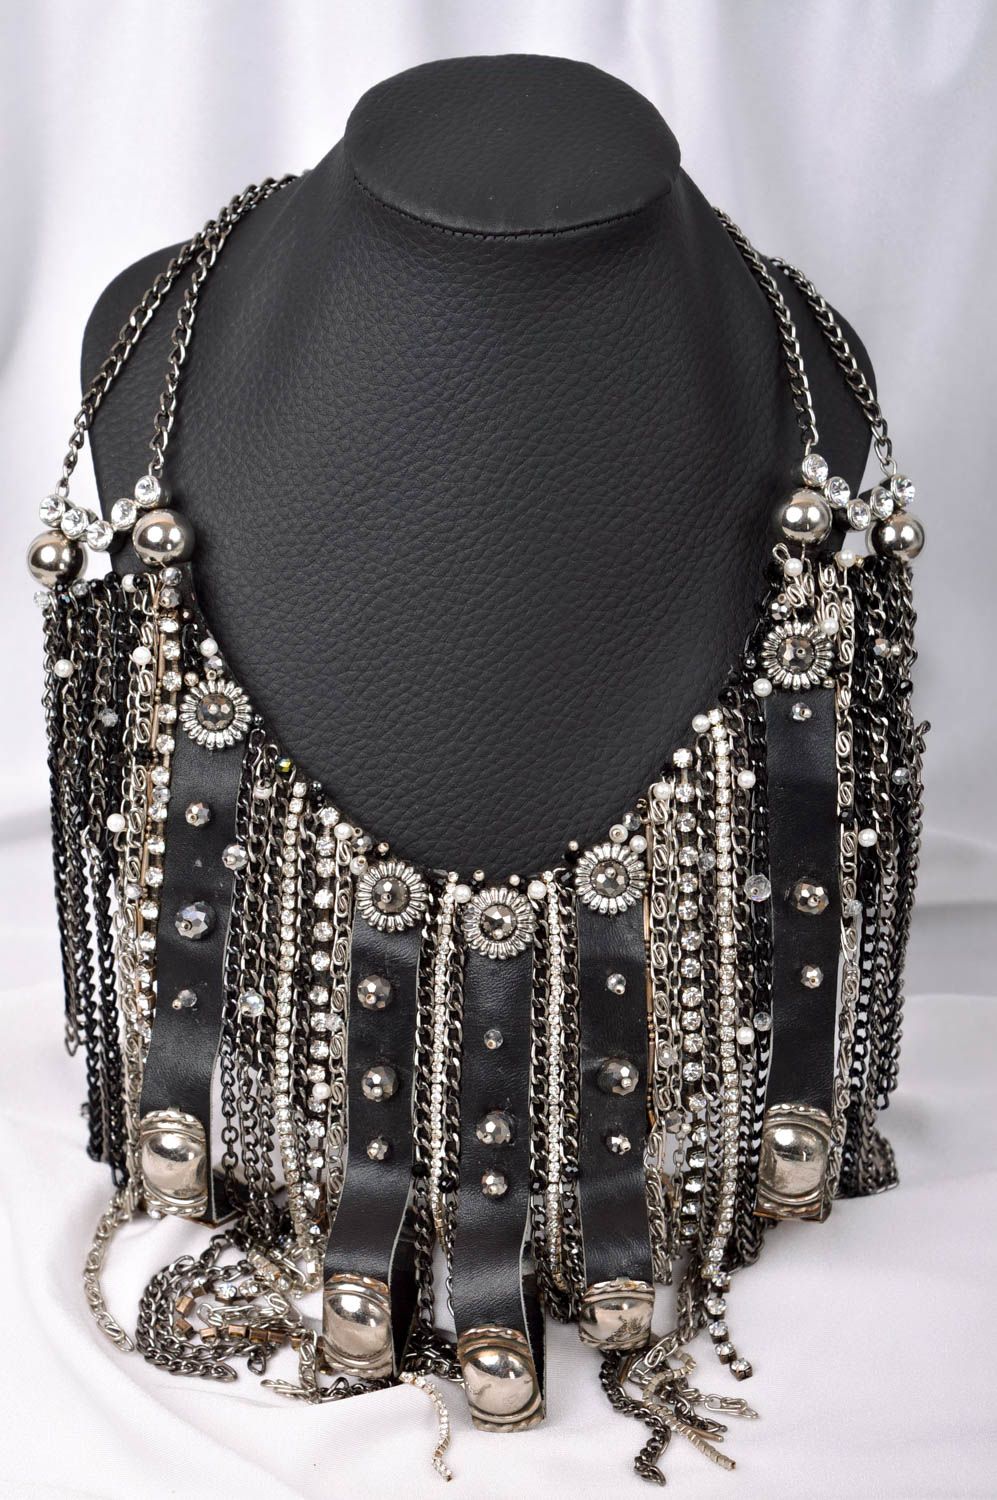 Collier noir Bijou fait main en chaînes cuir strass cristaux Cadeau femme photo 1